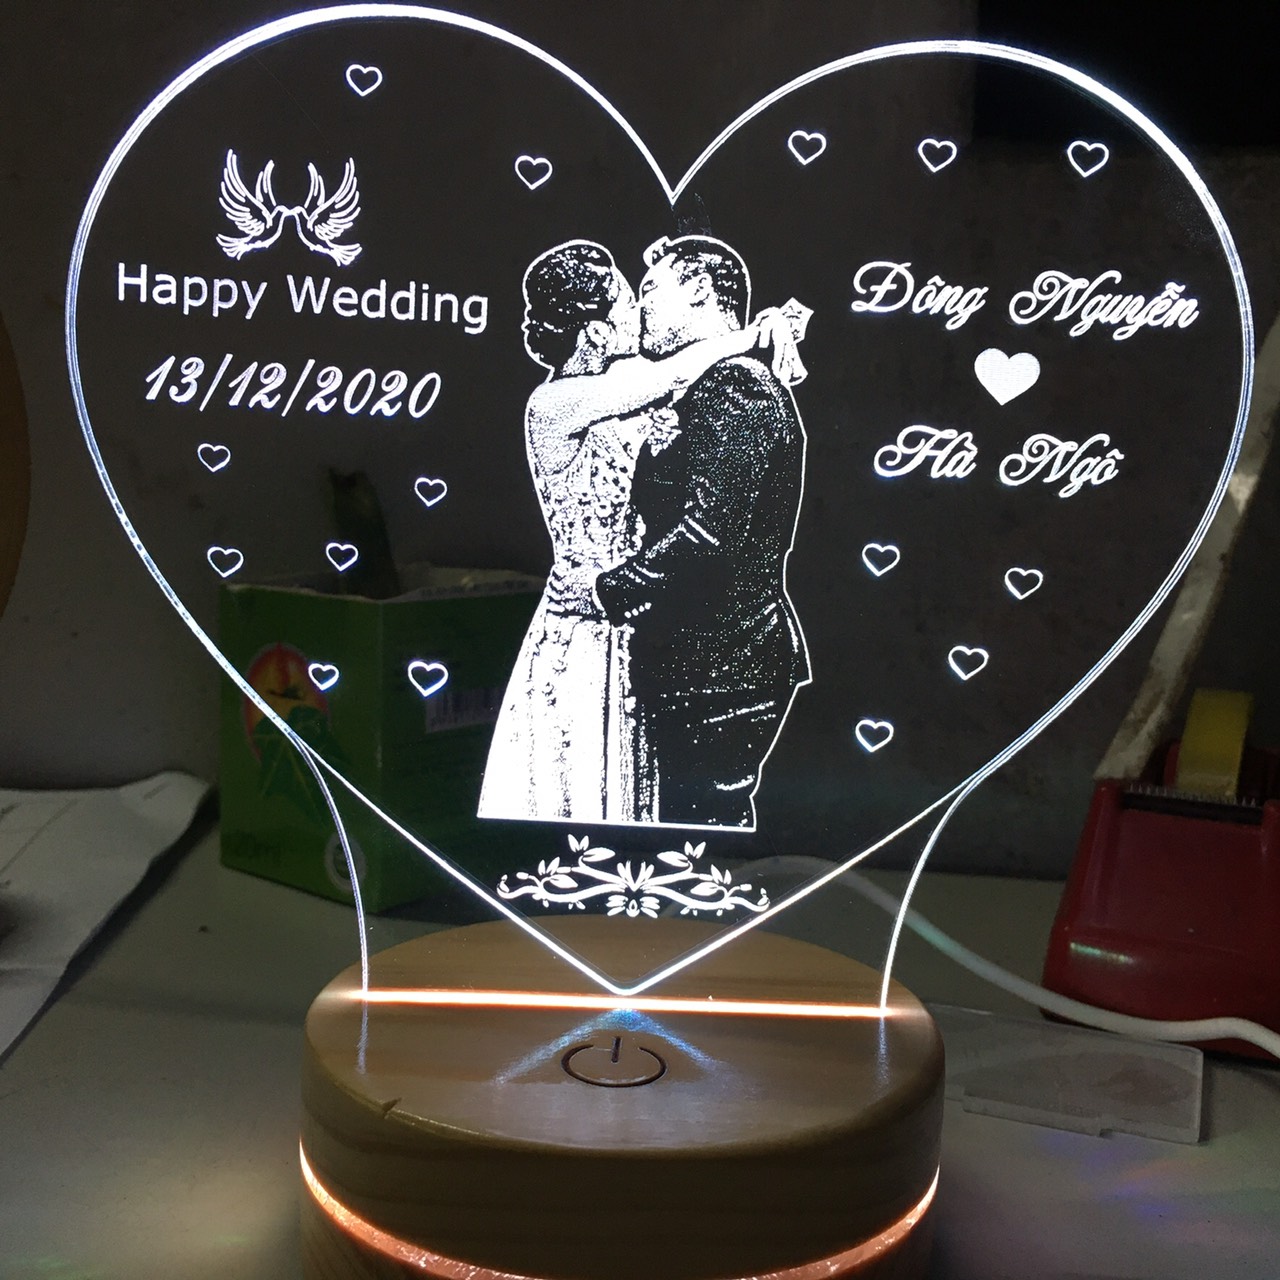 Quà tặng đám cưới ý nghĩa - Đèn led 3d khắc ảnh theo yêu cầu - Mẫu trái tim